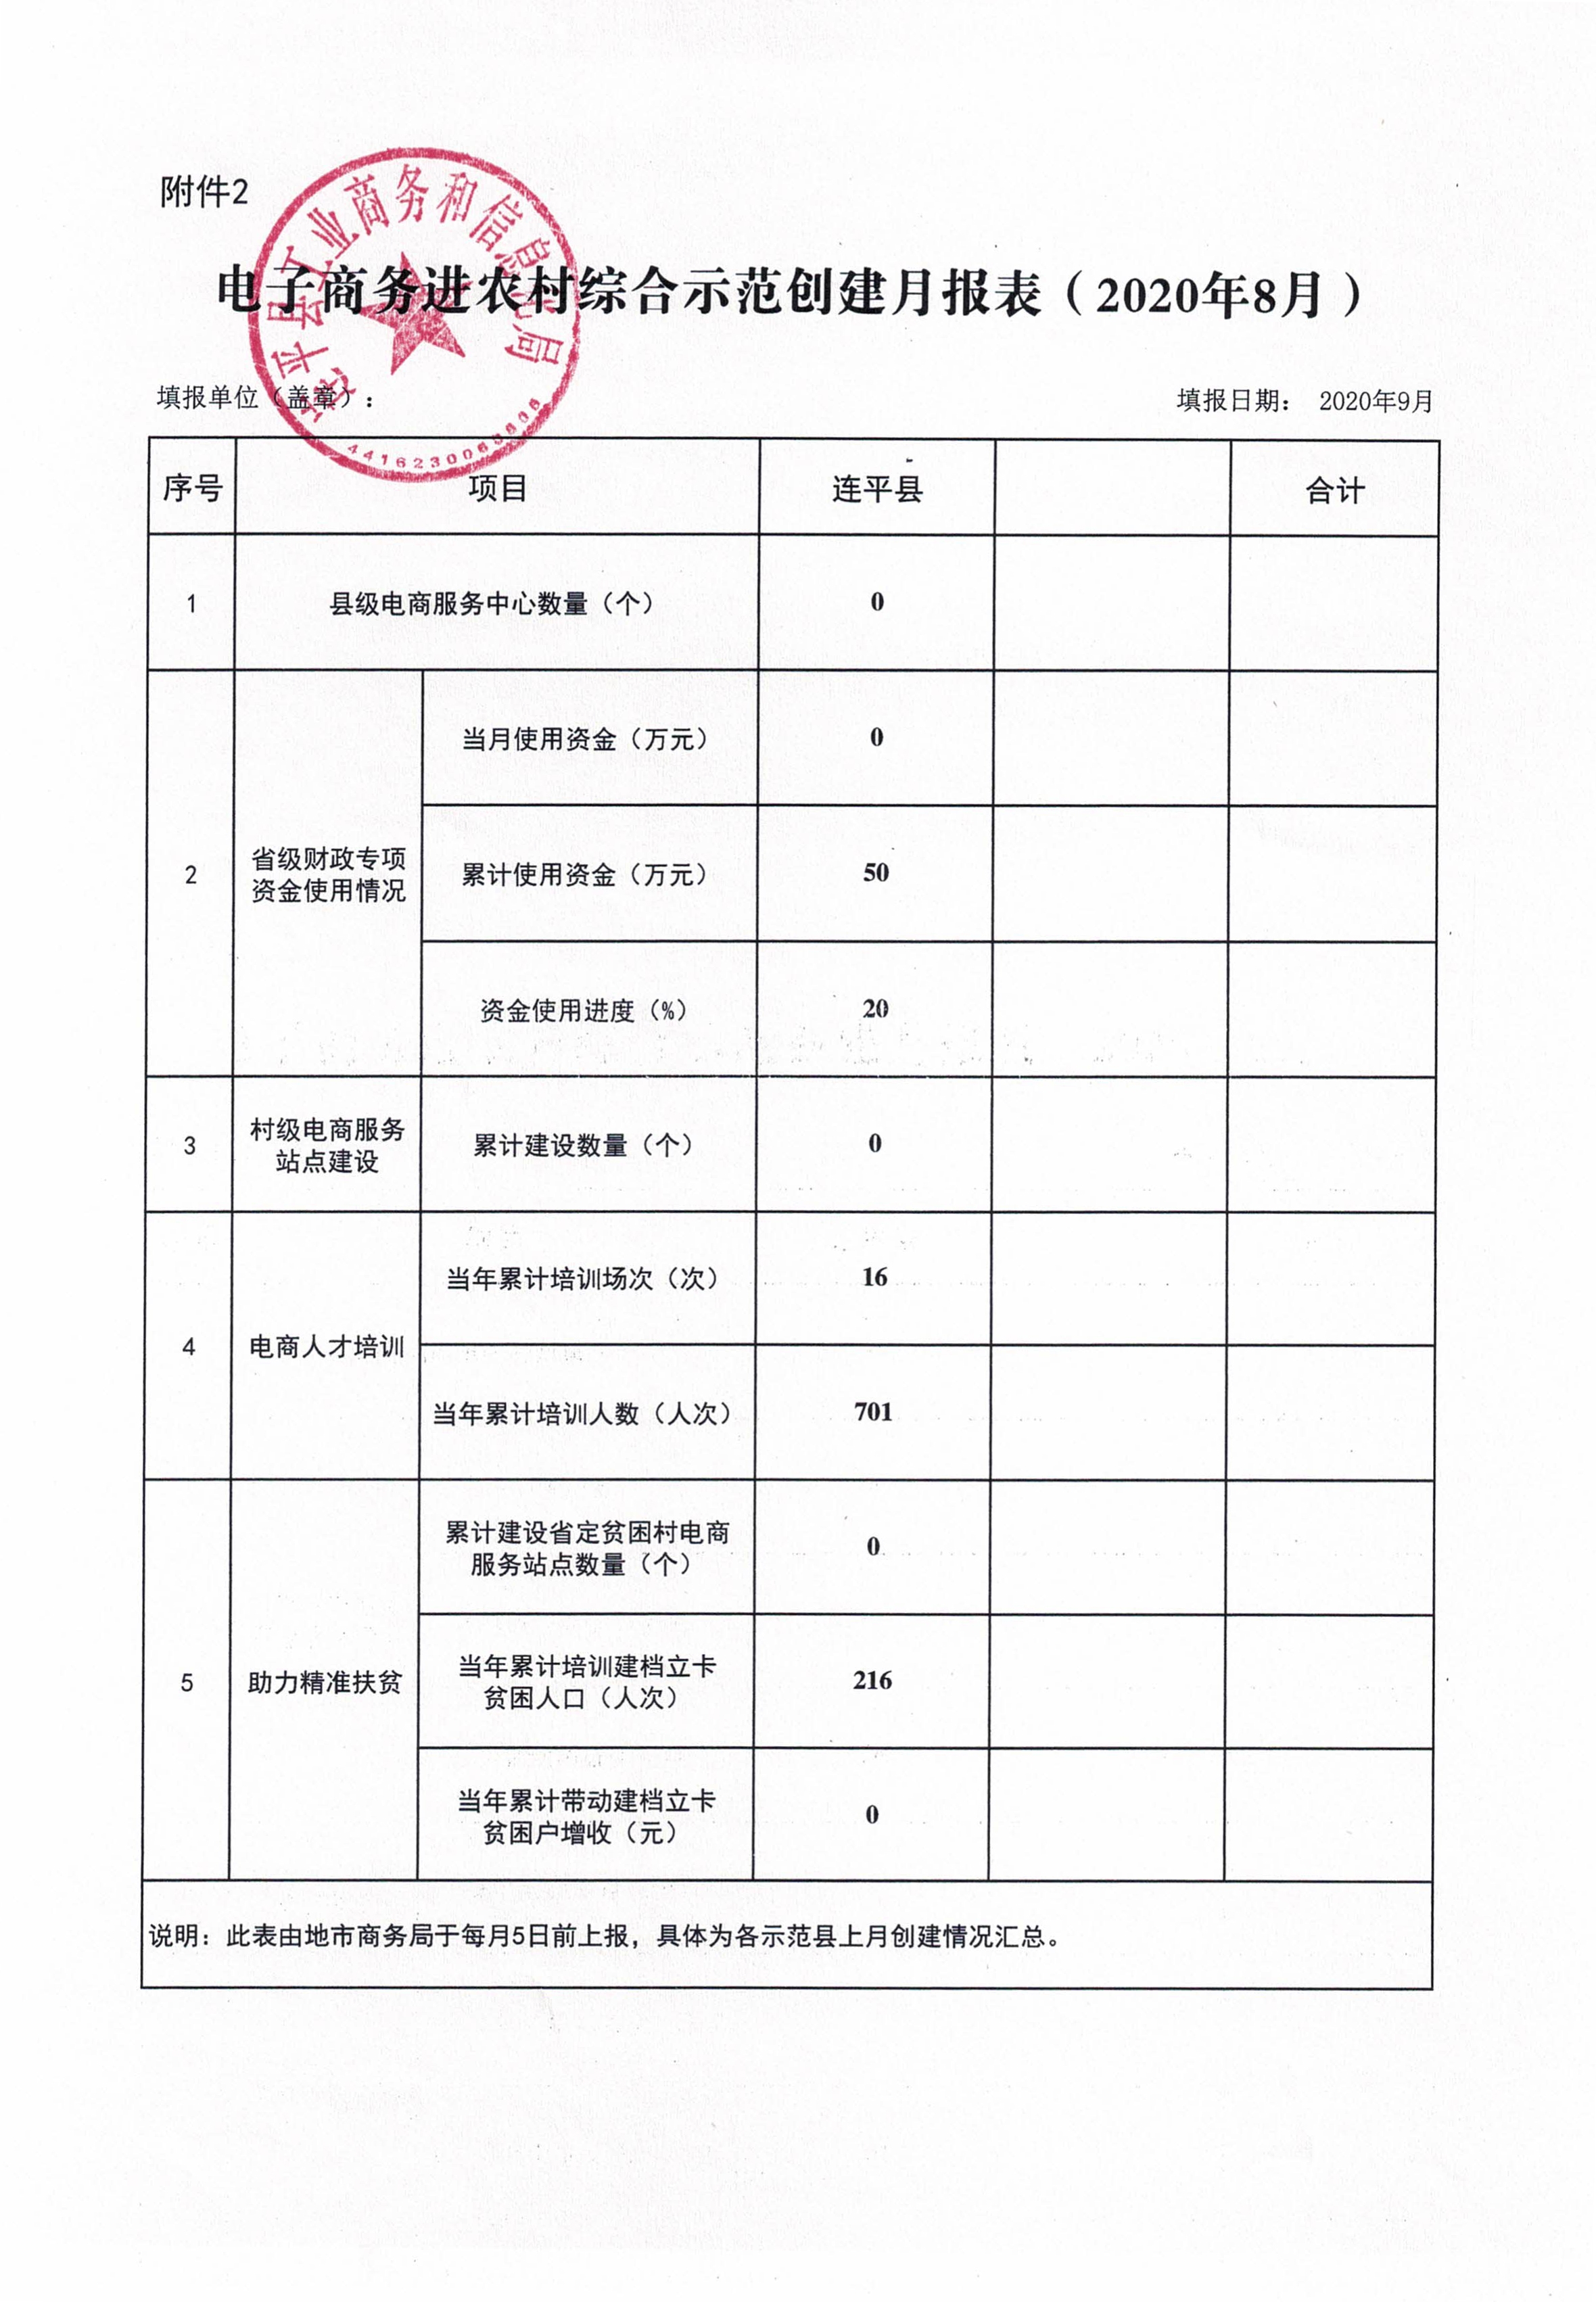 连平县省级电子商务进农村综合示范工作报表（202008）_0.jpg